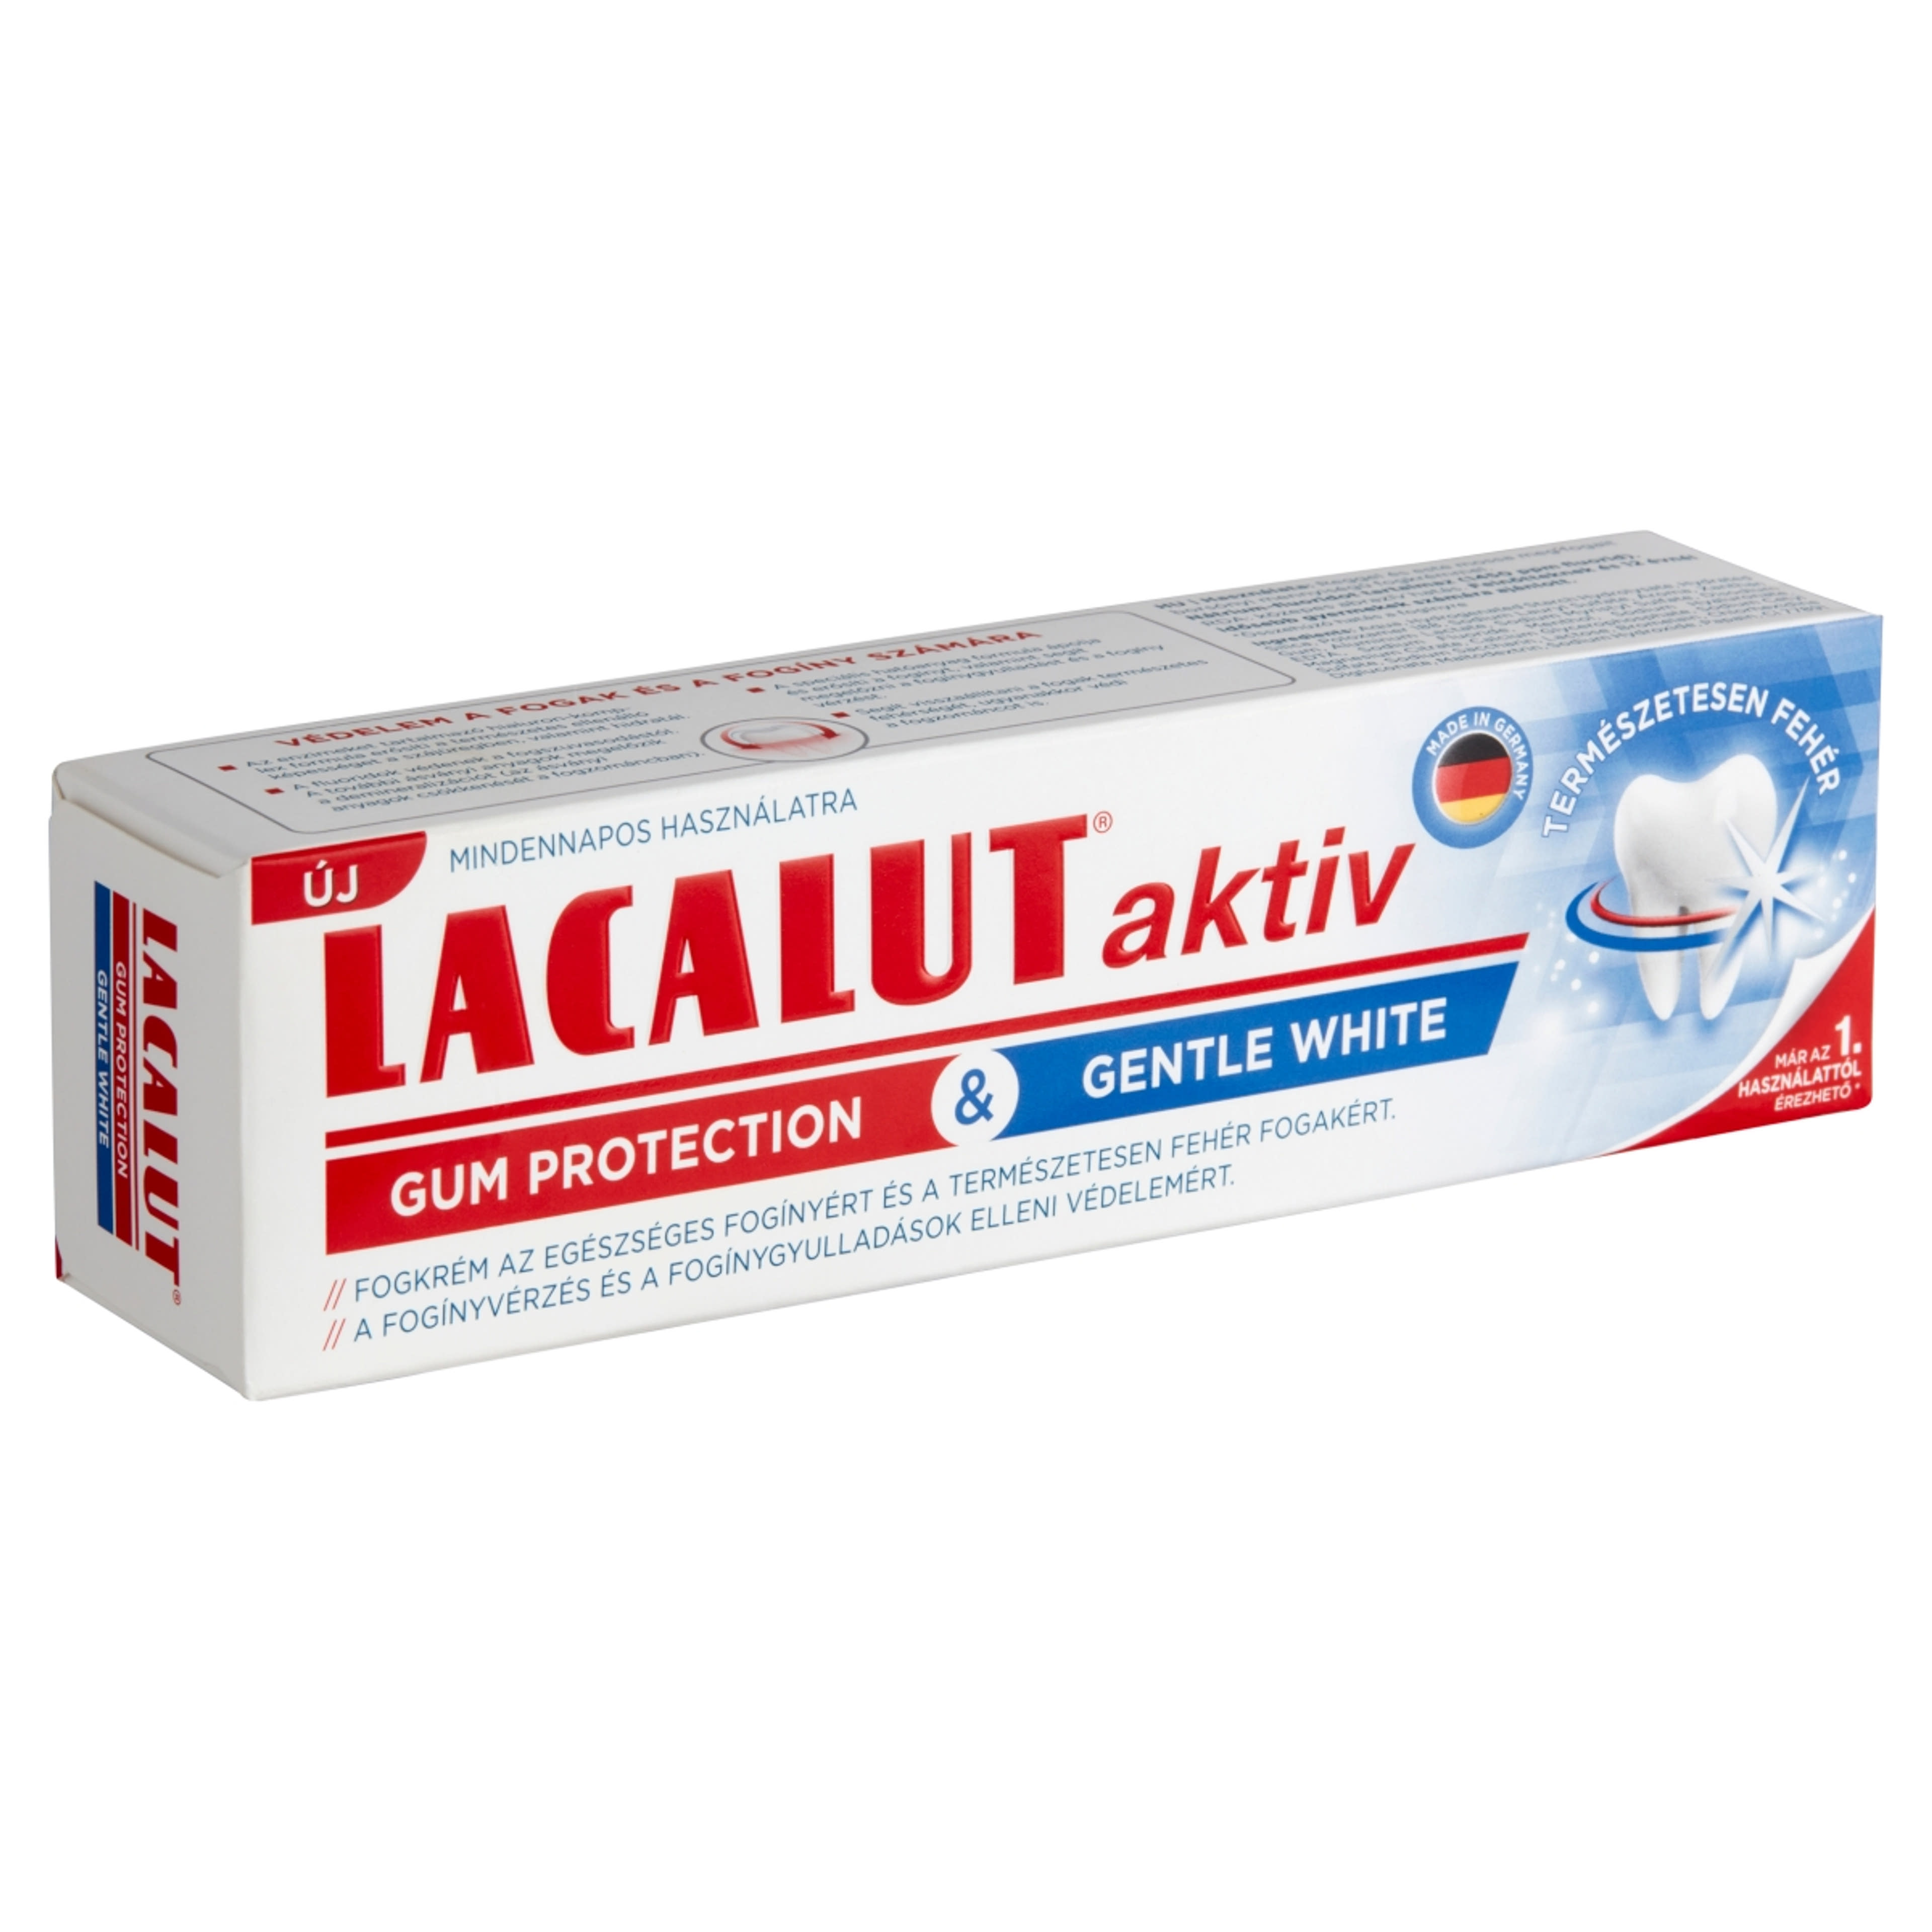 Lacalut Aktiv Gum Protection & Gentle White fogkrém - 75 ml-4